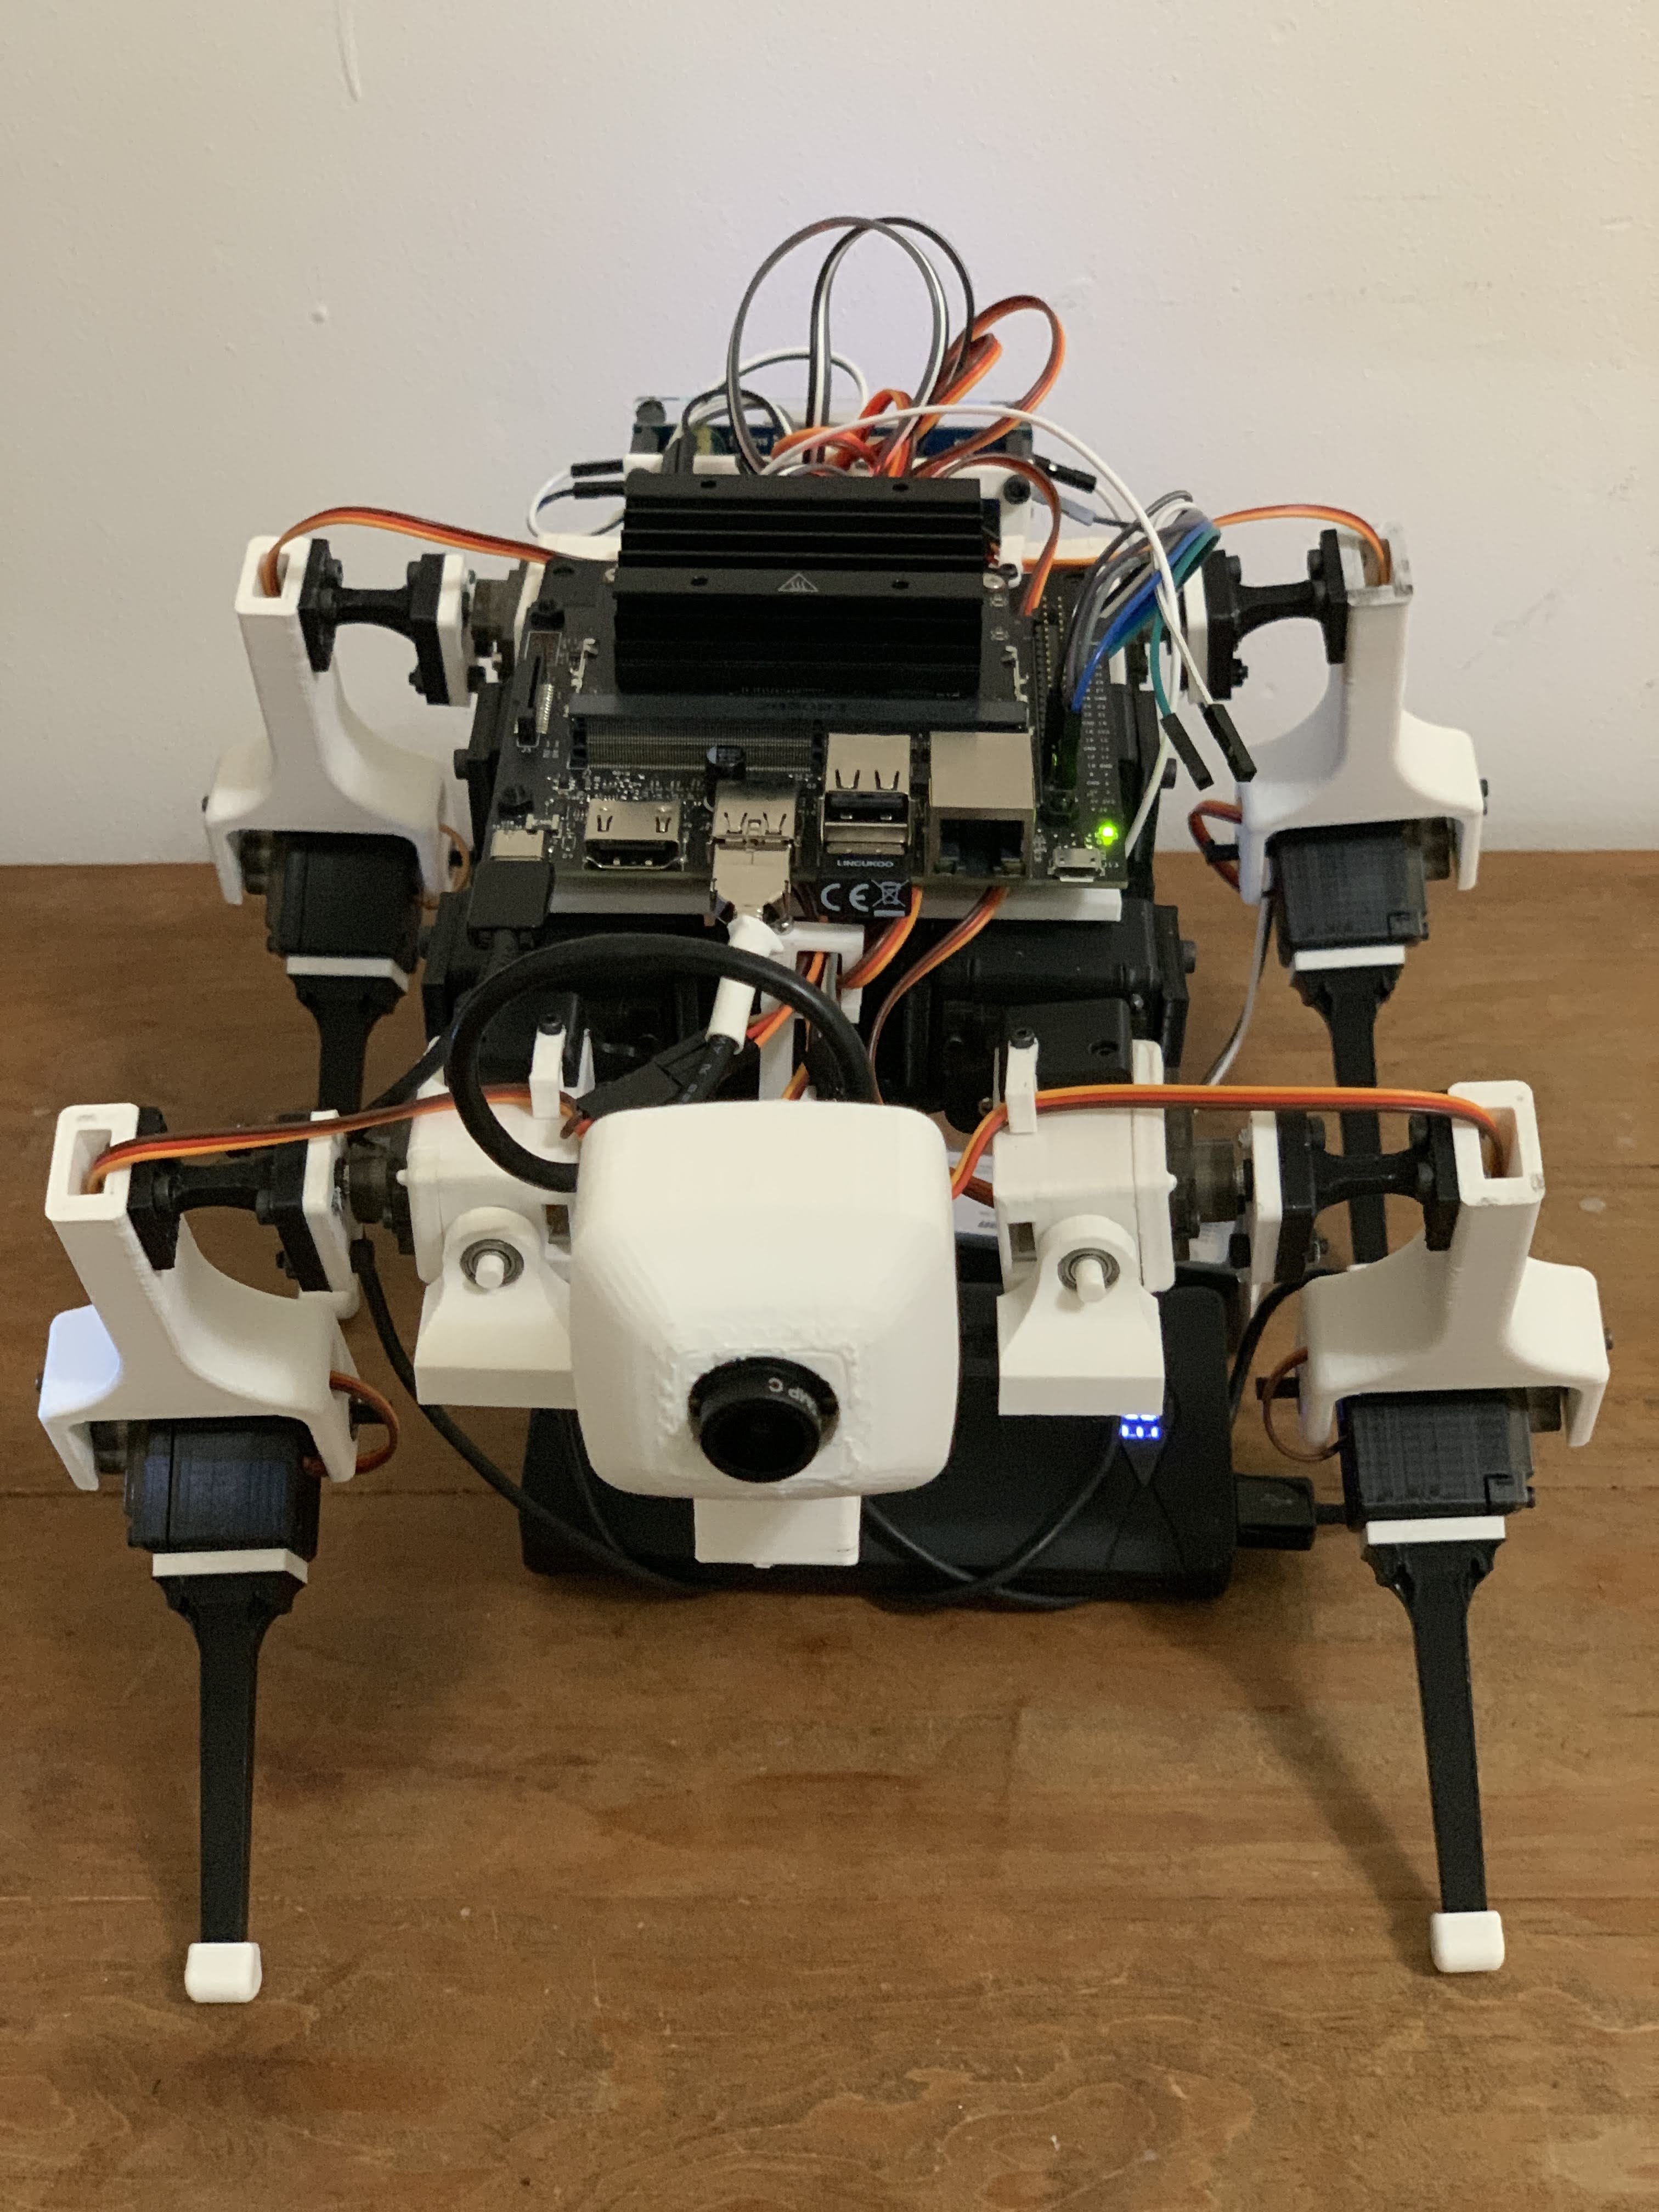 Cuatroped - 3D printed quadruped robot